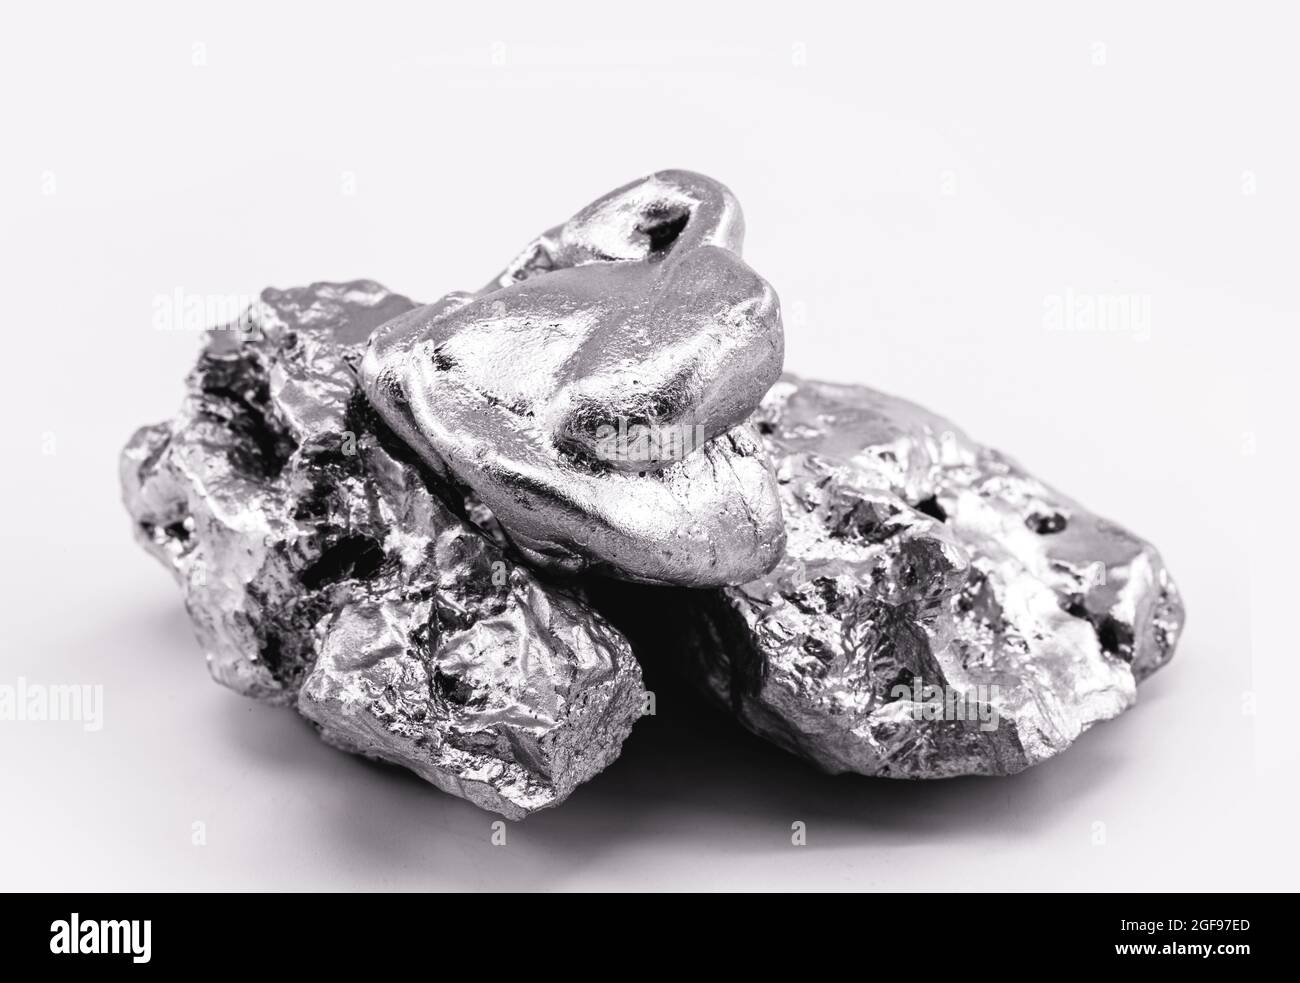 Le nickel est un élément chimique, à usage industriel pur ou dans les alliages métalliques, résistant à la corrosion, en acier inoxydable Banque D'Images